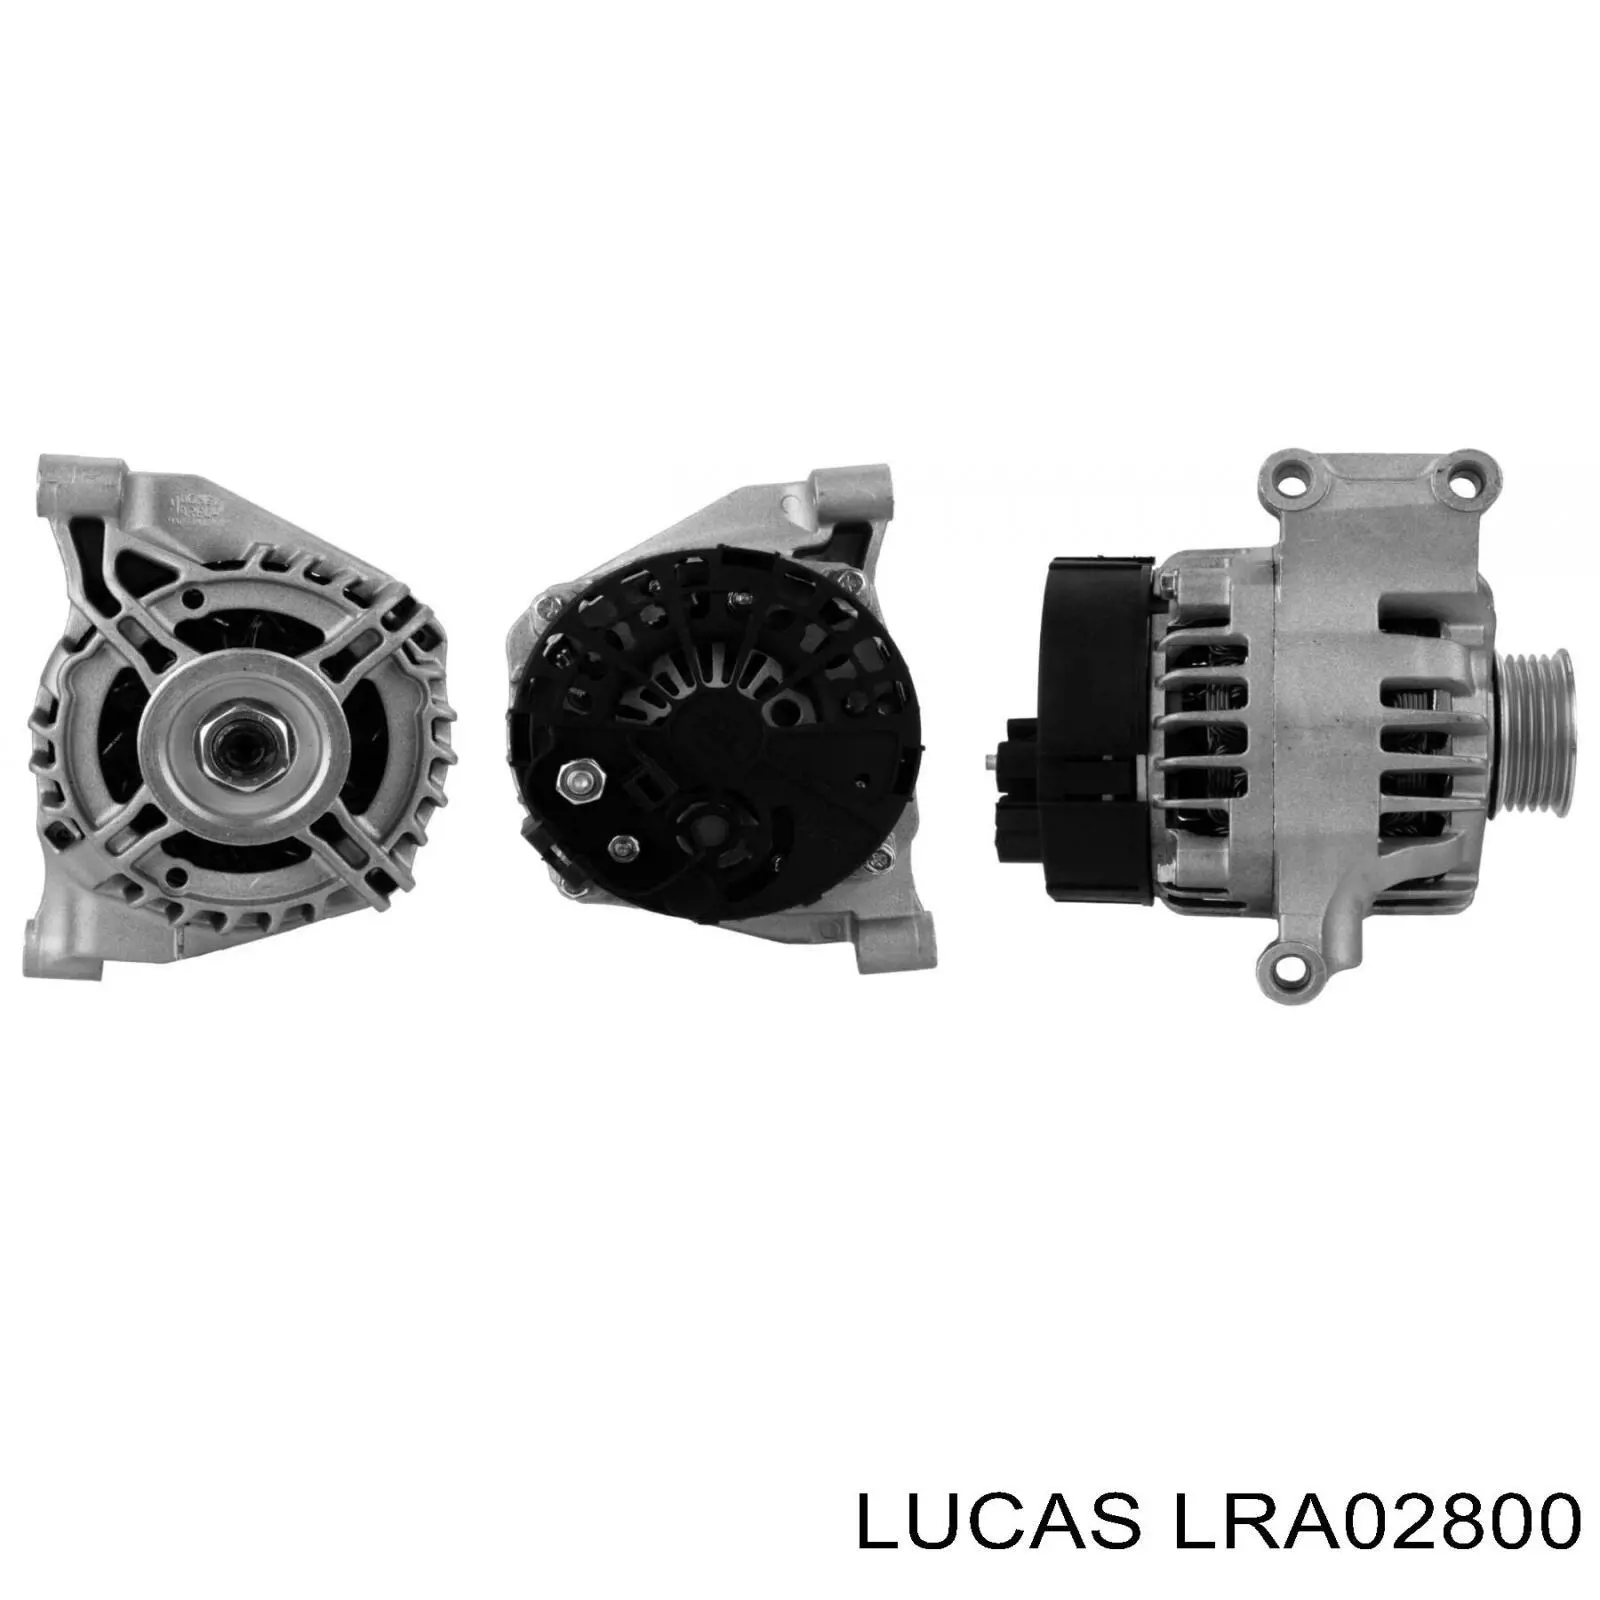 LRA02800 Lucas генератор